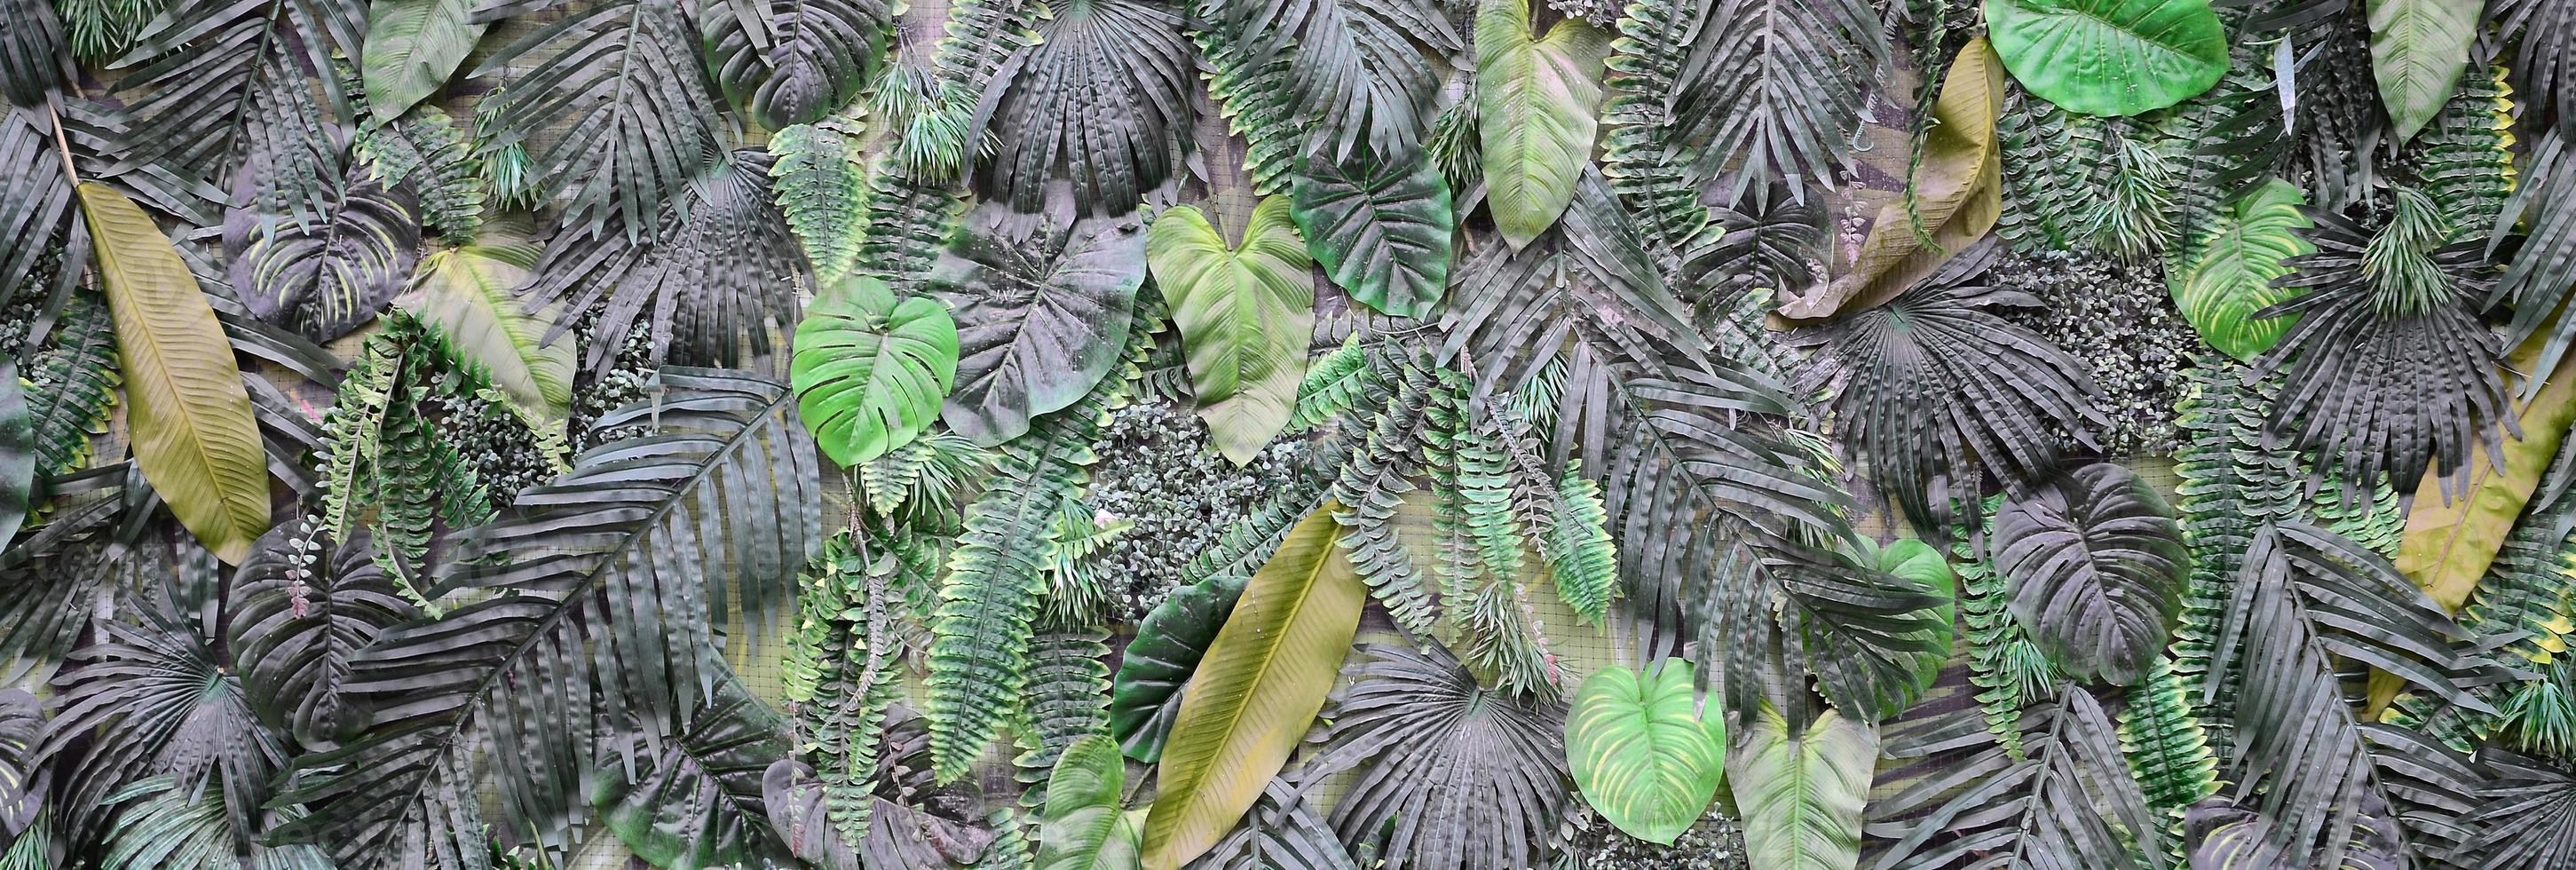 fondo de hojas verdes tropicales, helecho, palma y hoja de monstera deliciosa en la pared foto